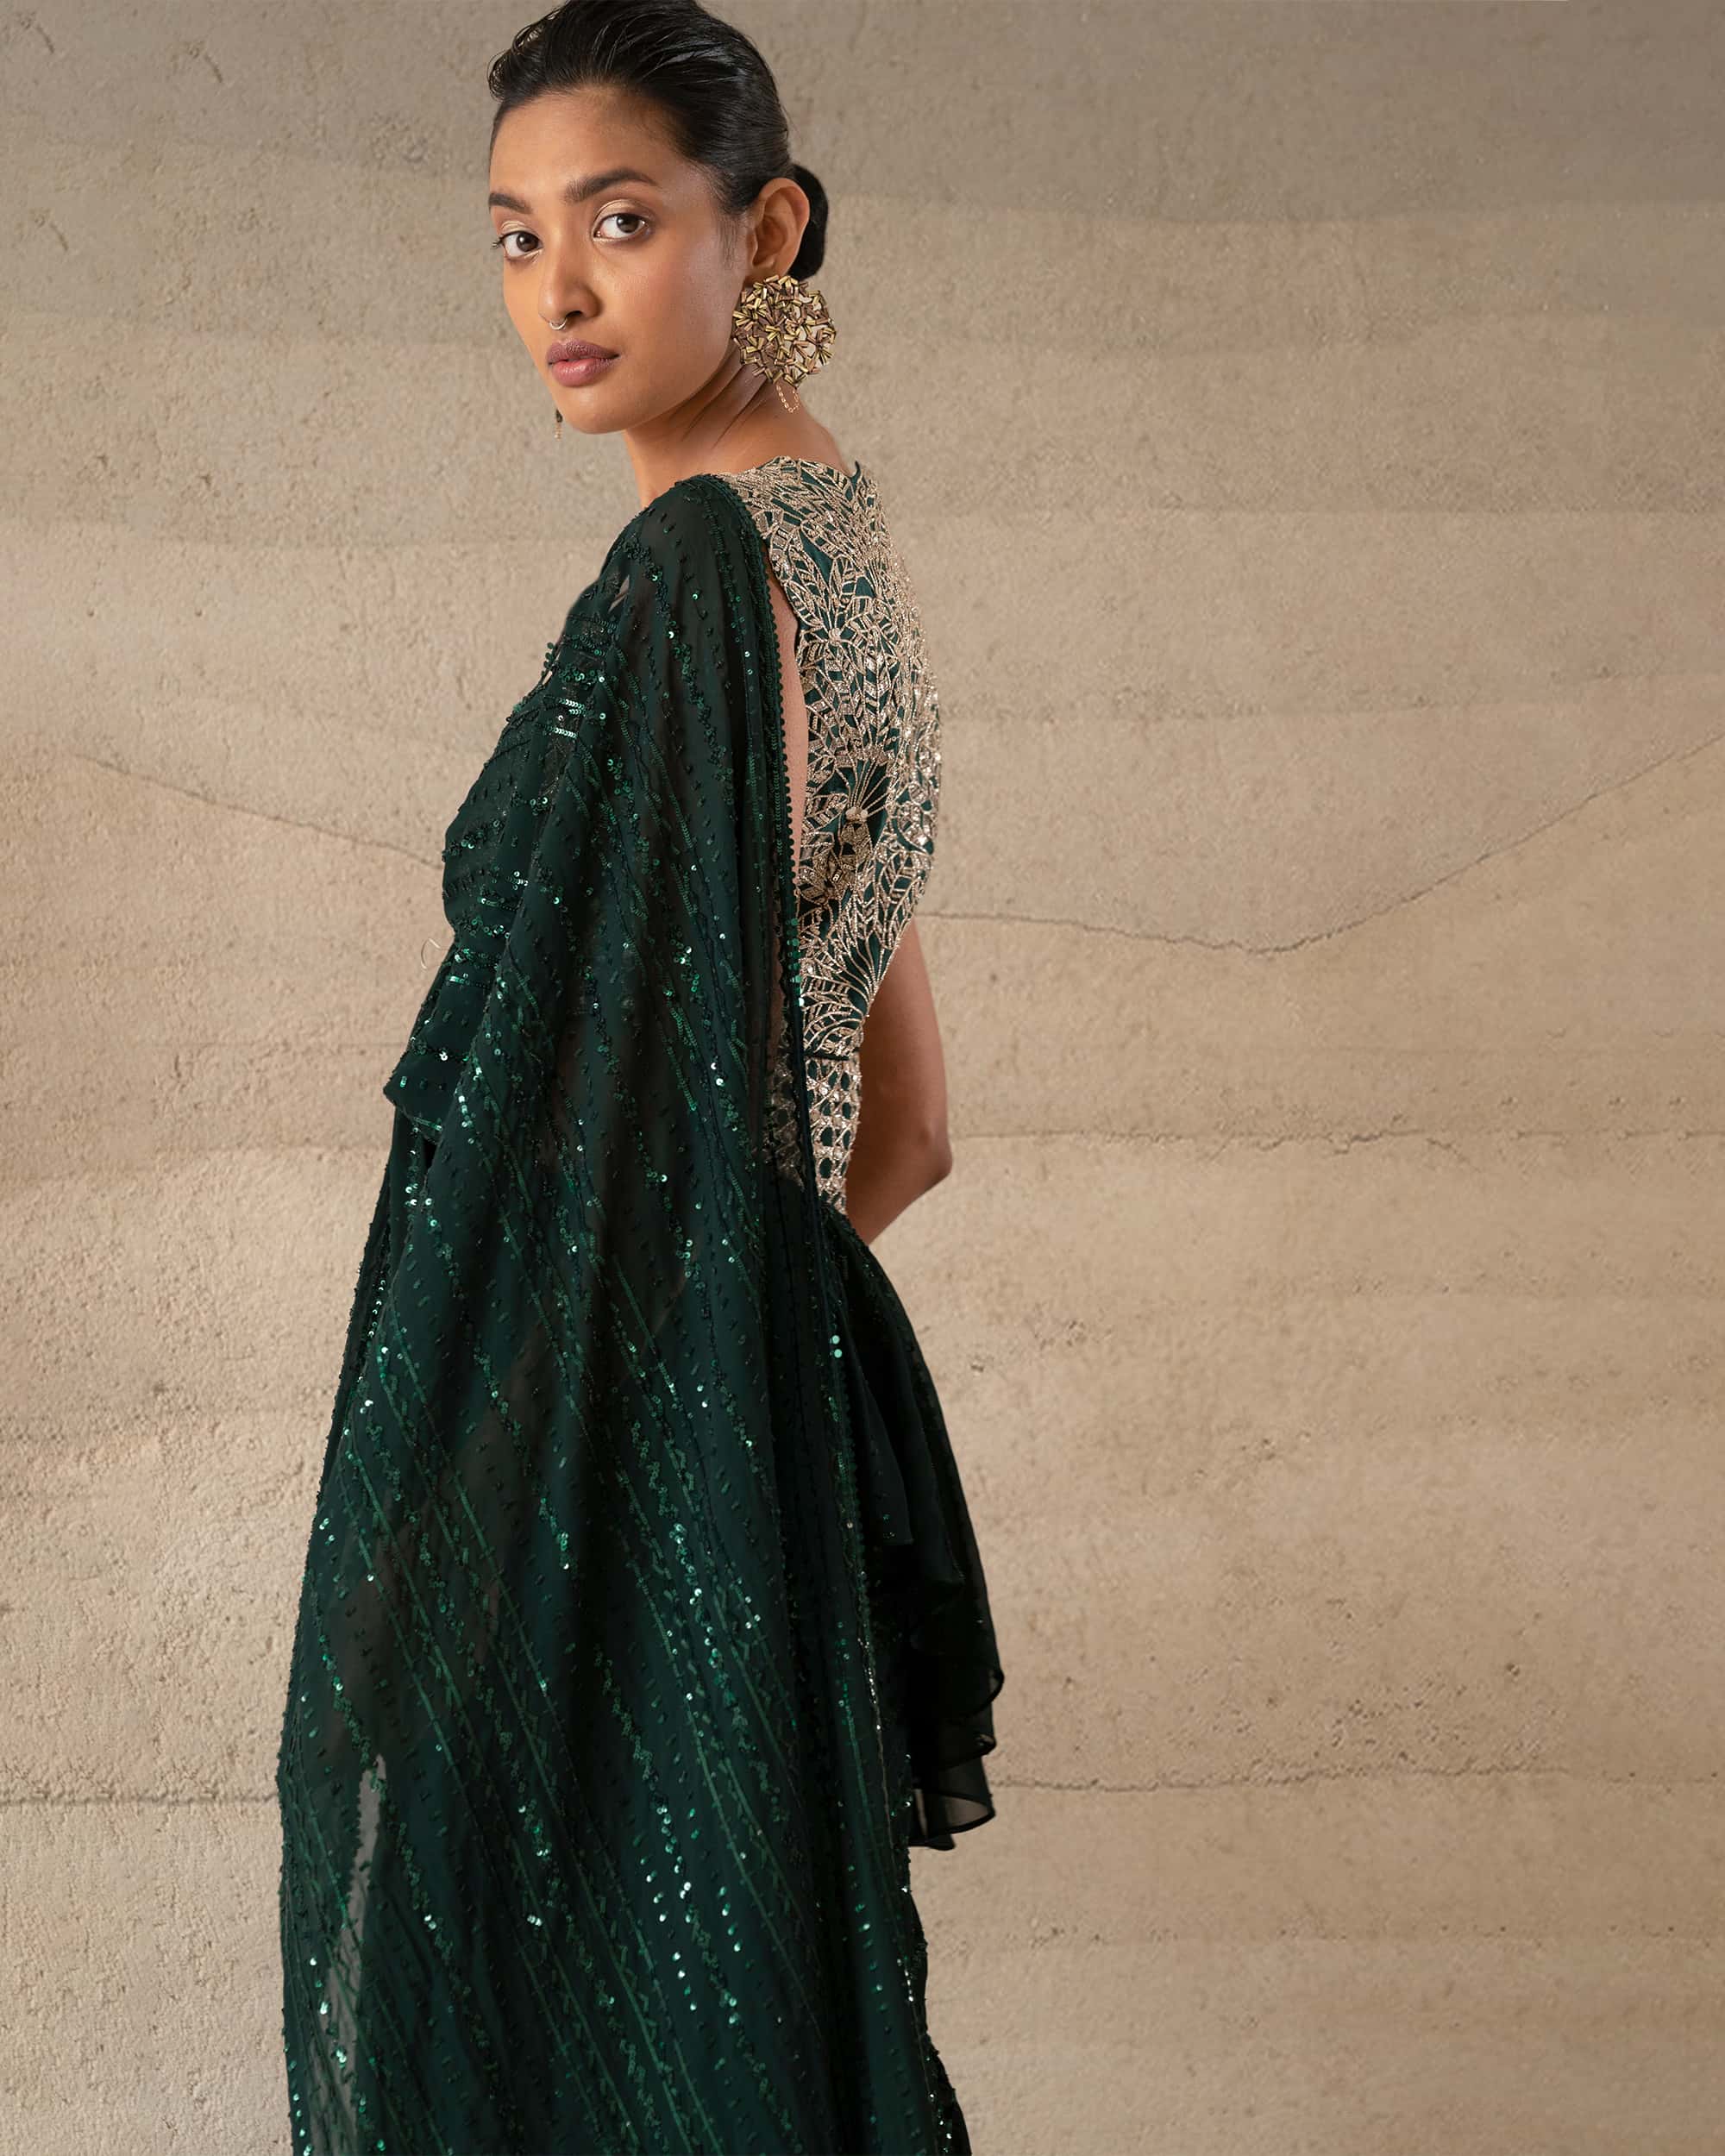 Drishya Saree gown